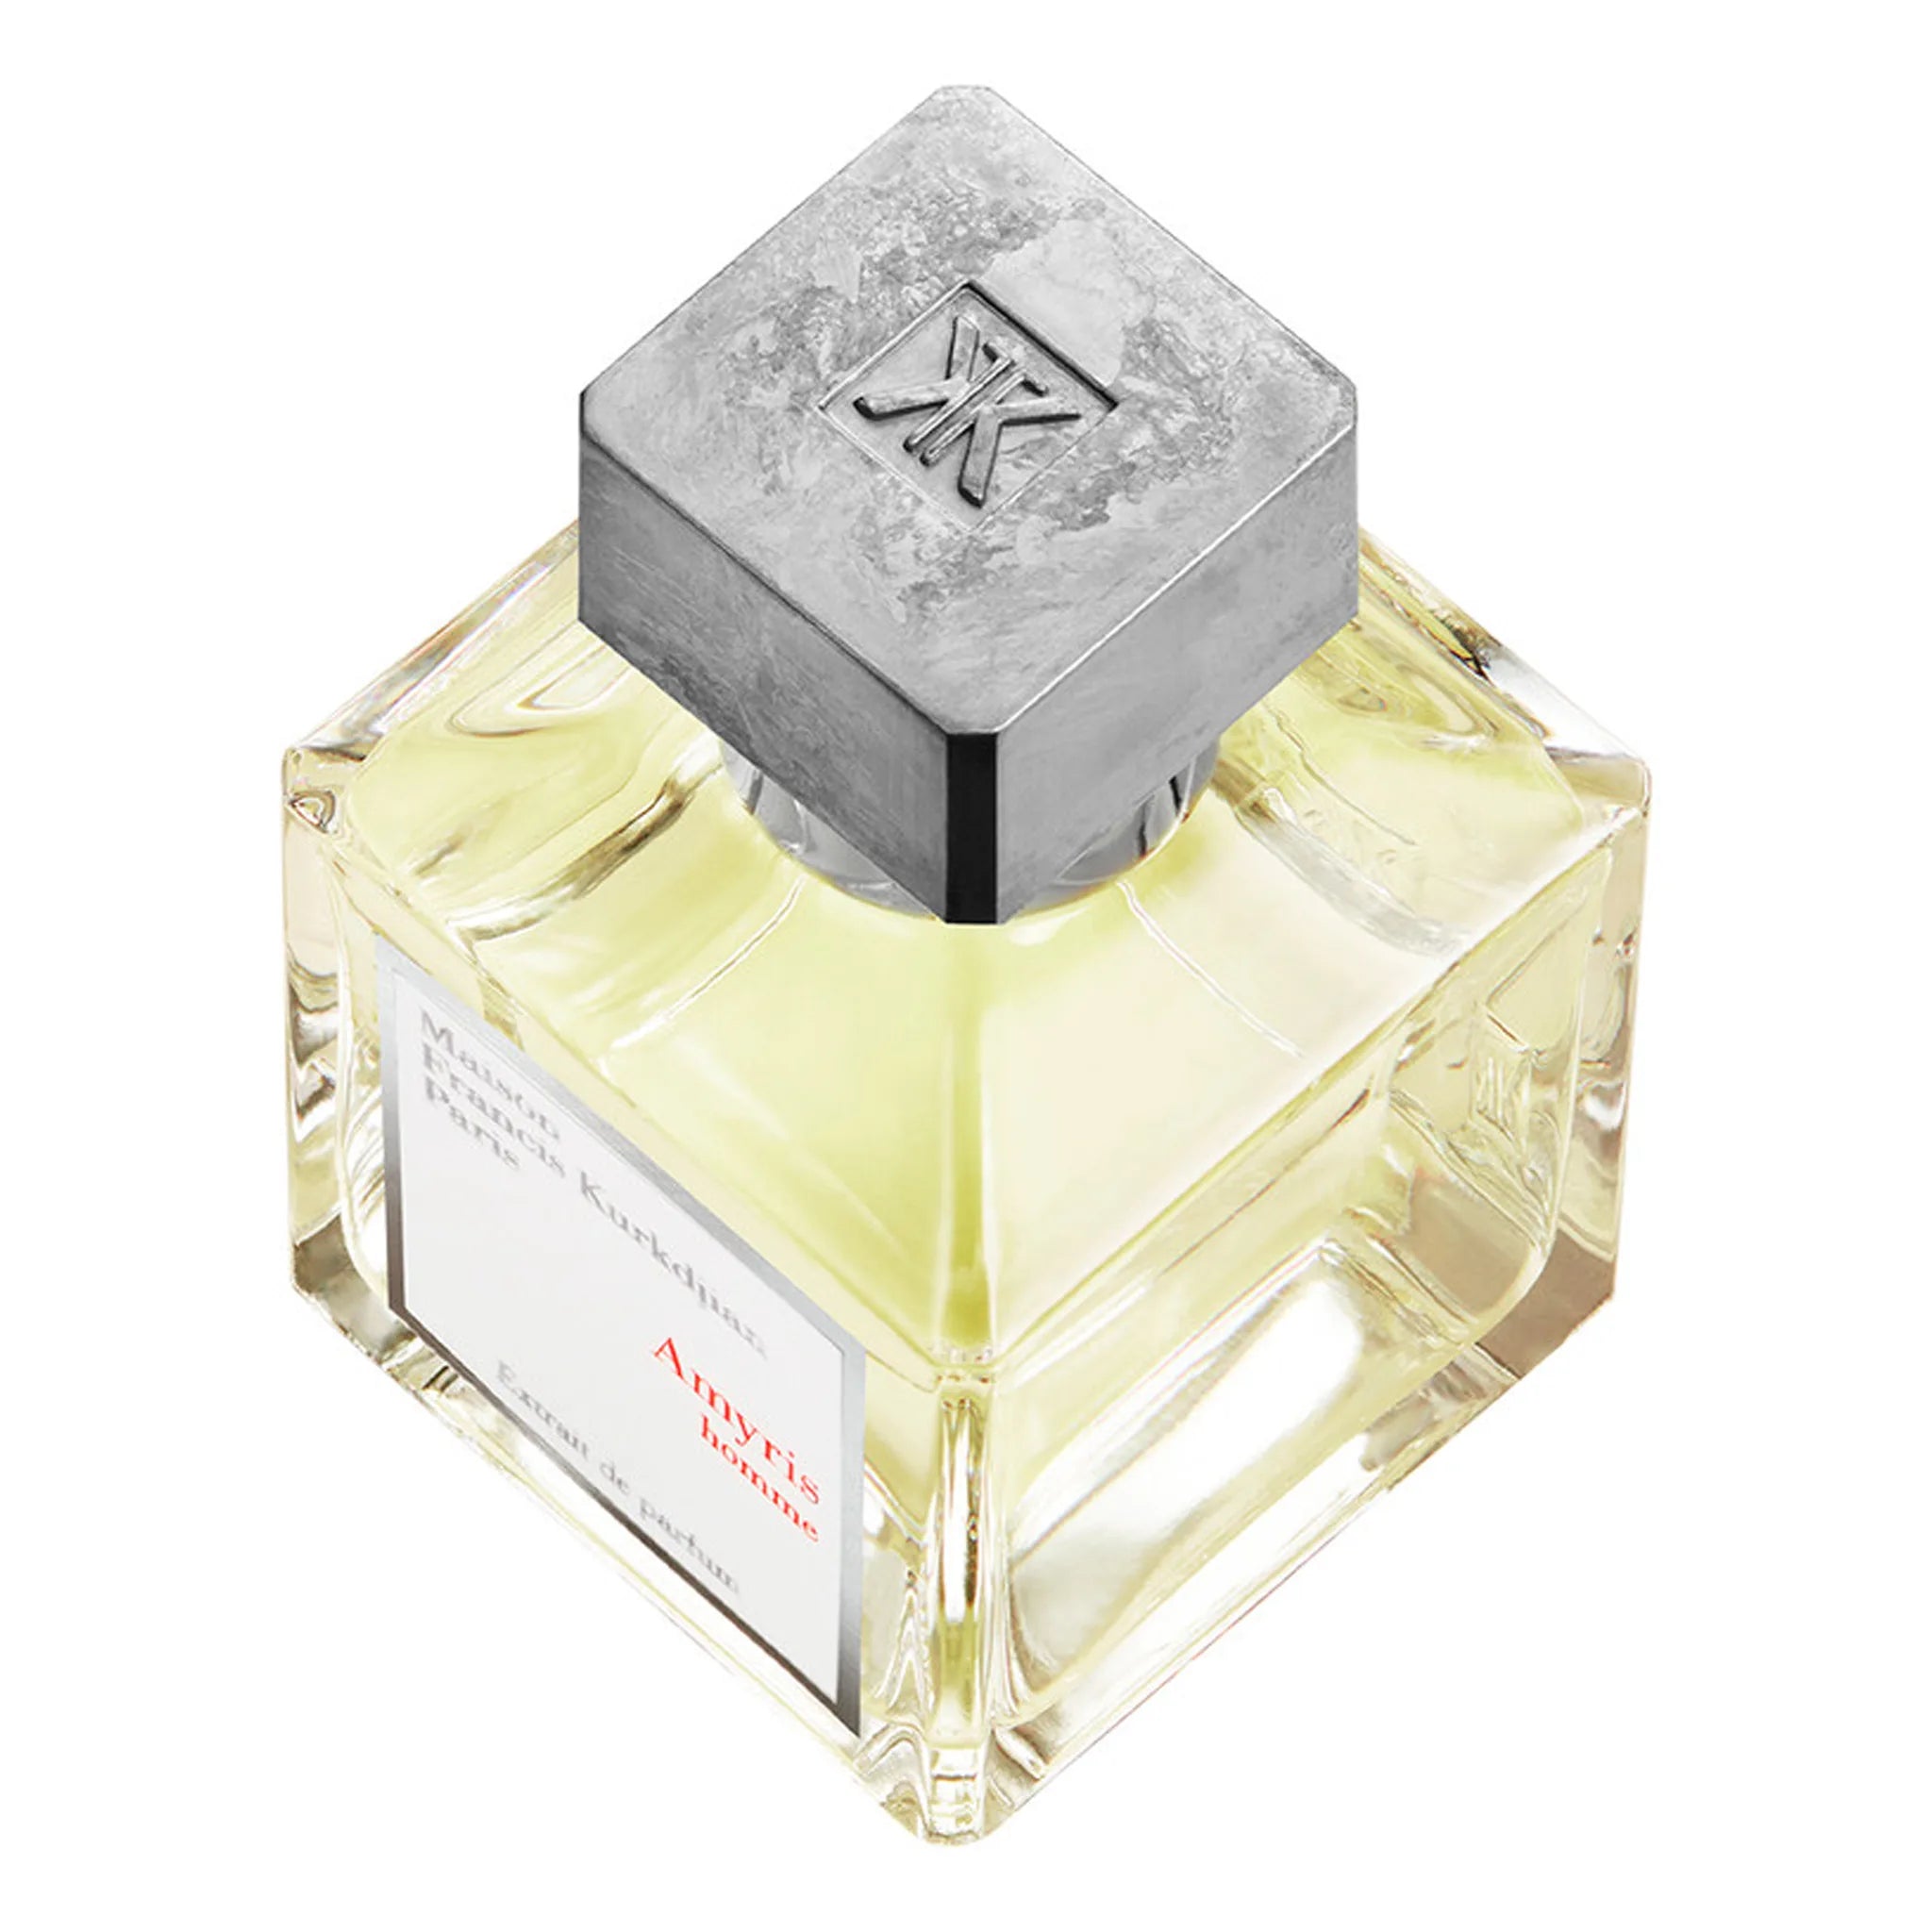 Top view of Maison Francis Kurkdjian Amyris Homme Extrait De Parfum 70ml